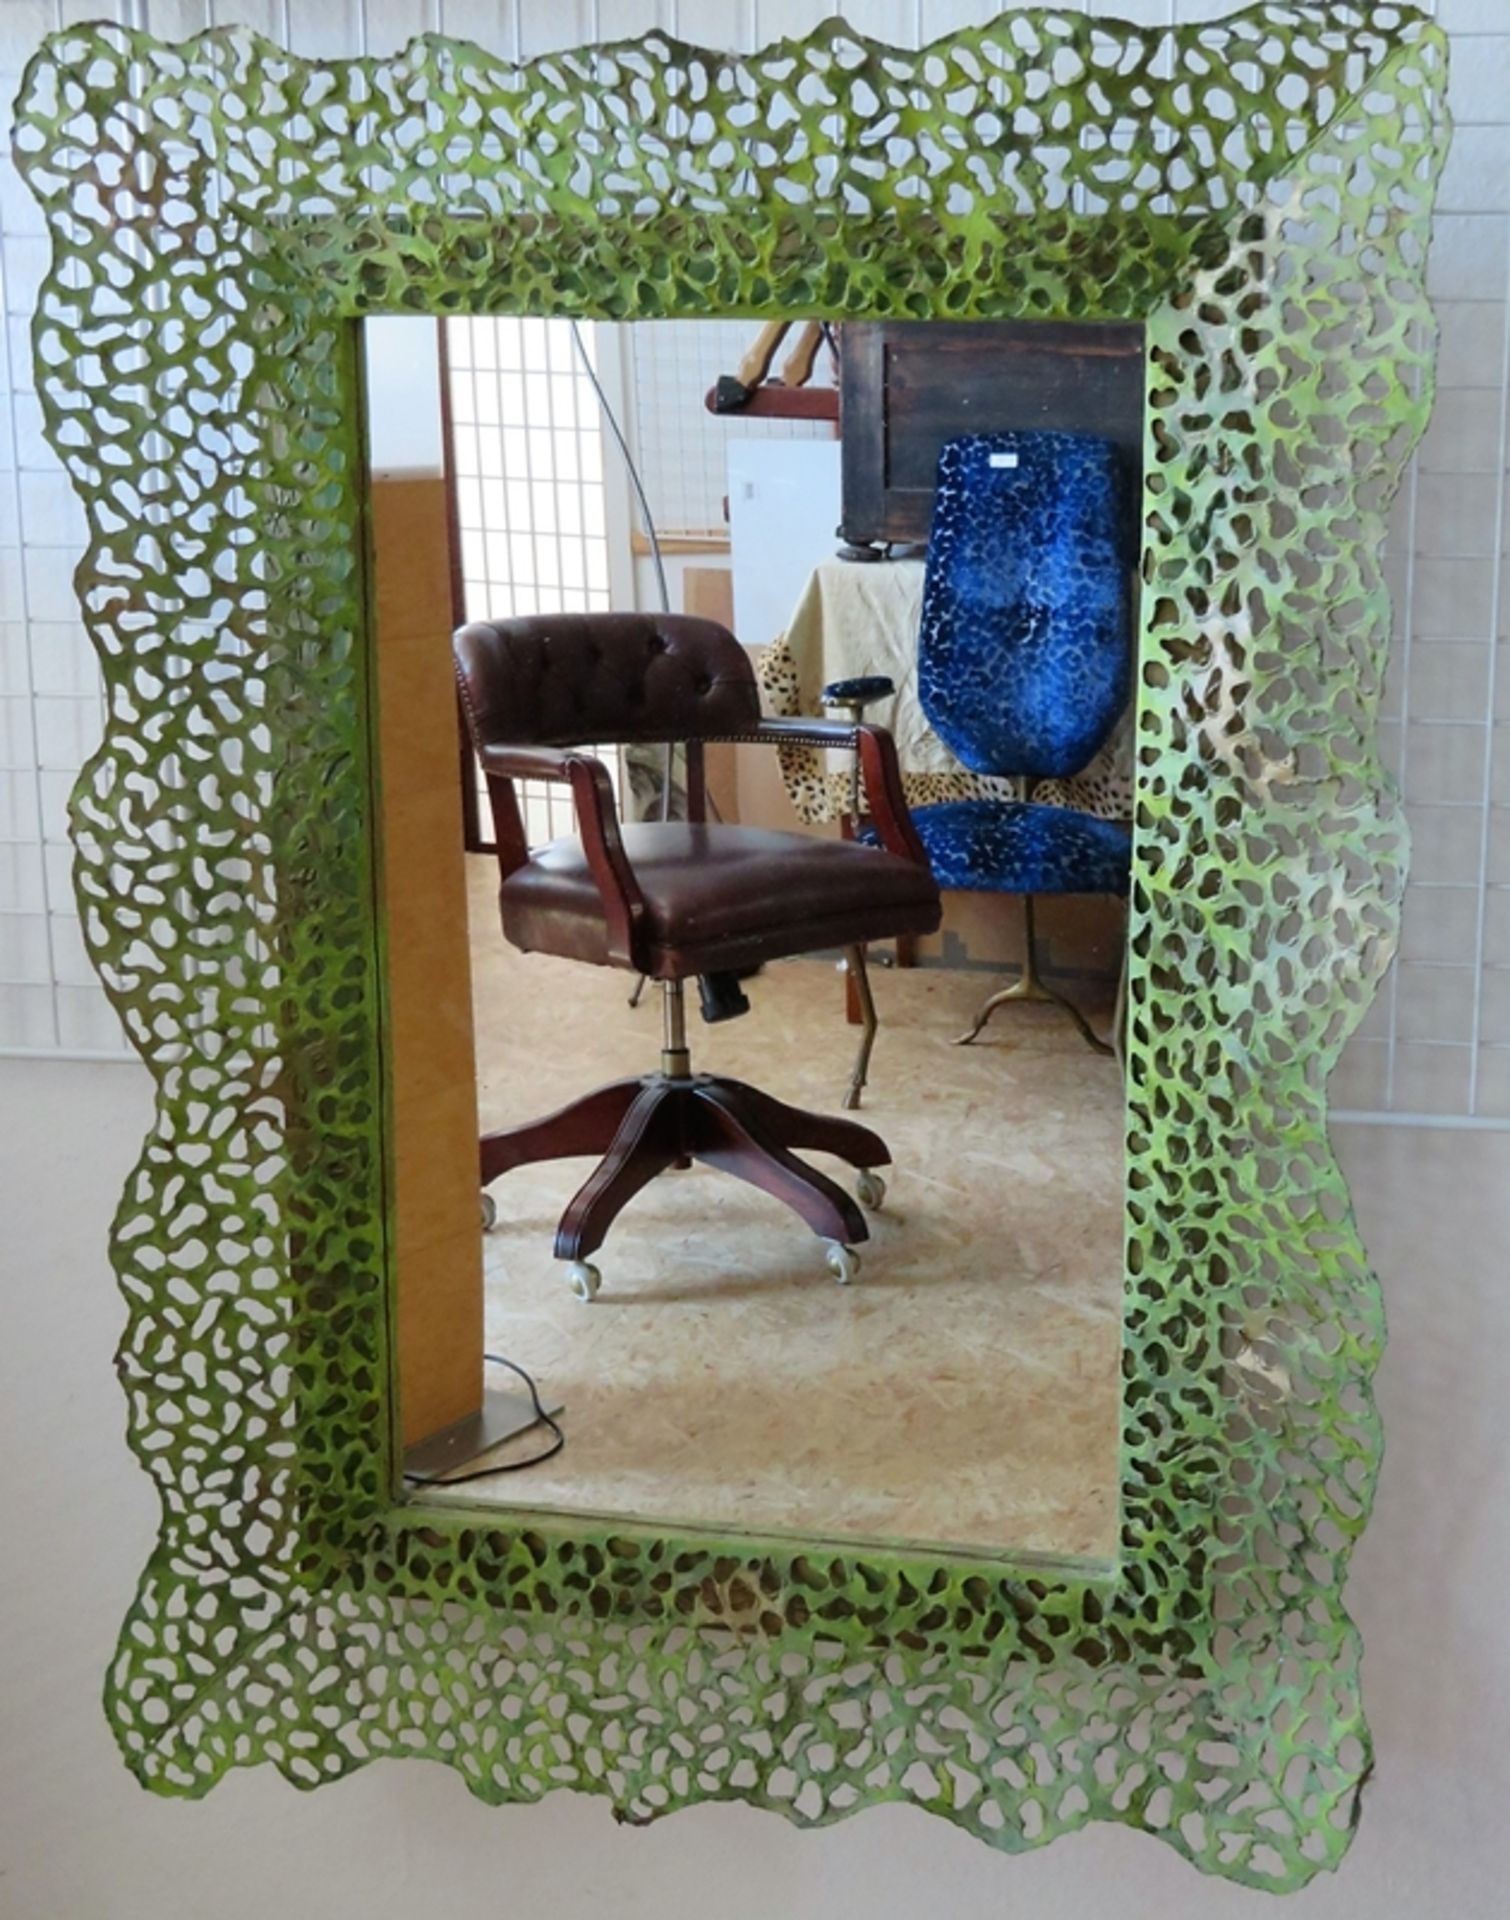 Großer Designer Spiegel, Blech durchbrochen gearbeitet und grün gefasst, 111,3 x 83,7 x 19 cm.